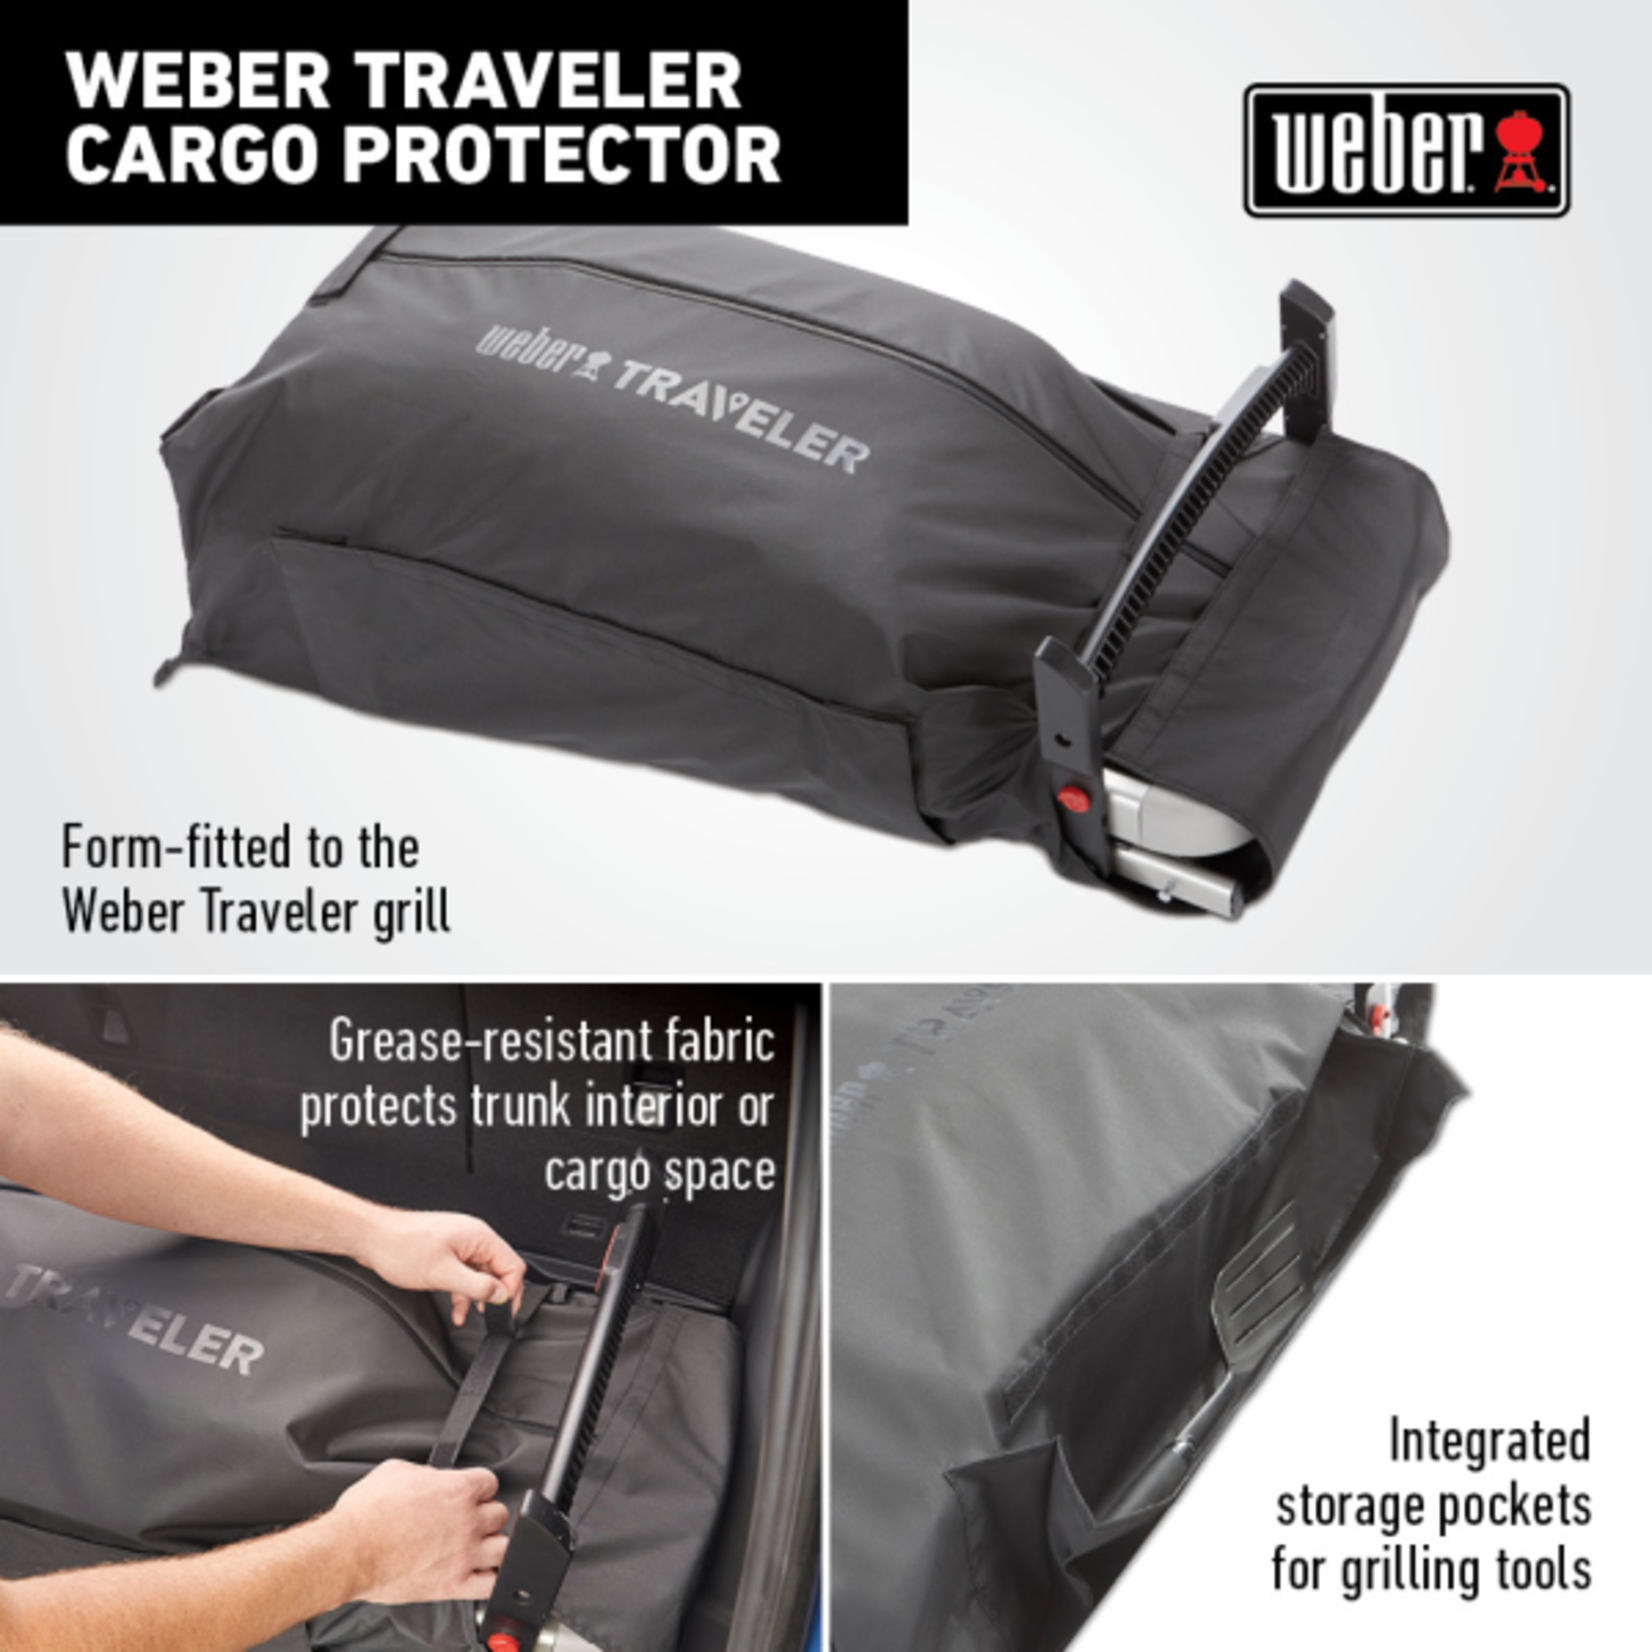 Weber Traveler Cargo Protector